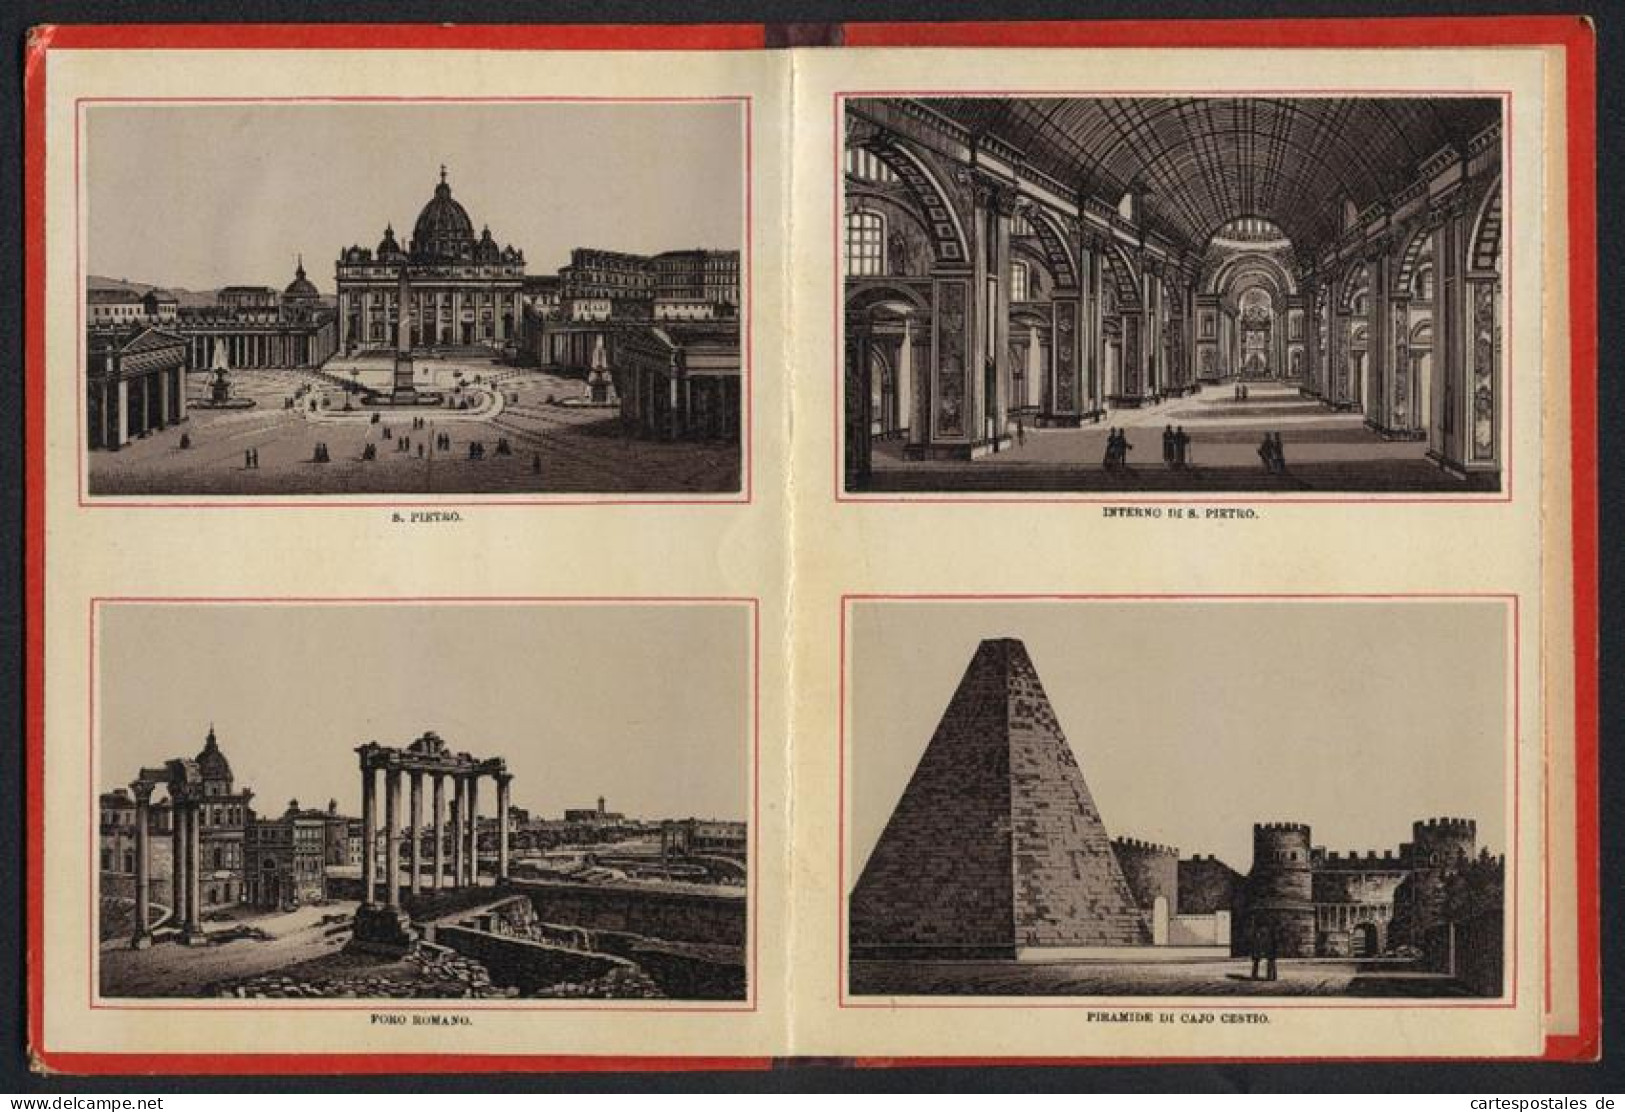 Leporello-Album 24 Lithographie-Ansichten Roma, S. Pietro, Piramide Di Cajo Cestio, Fontana Di Trevi, Piazza Colonna  - Litografía